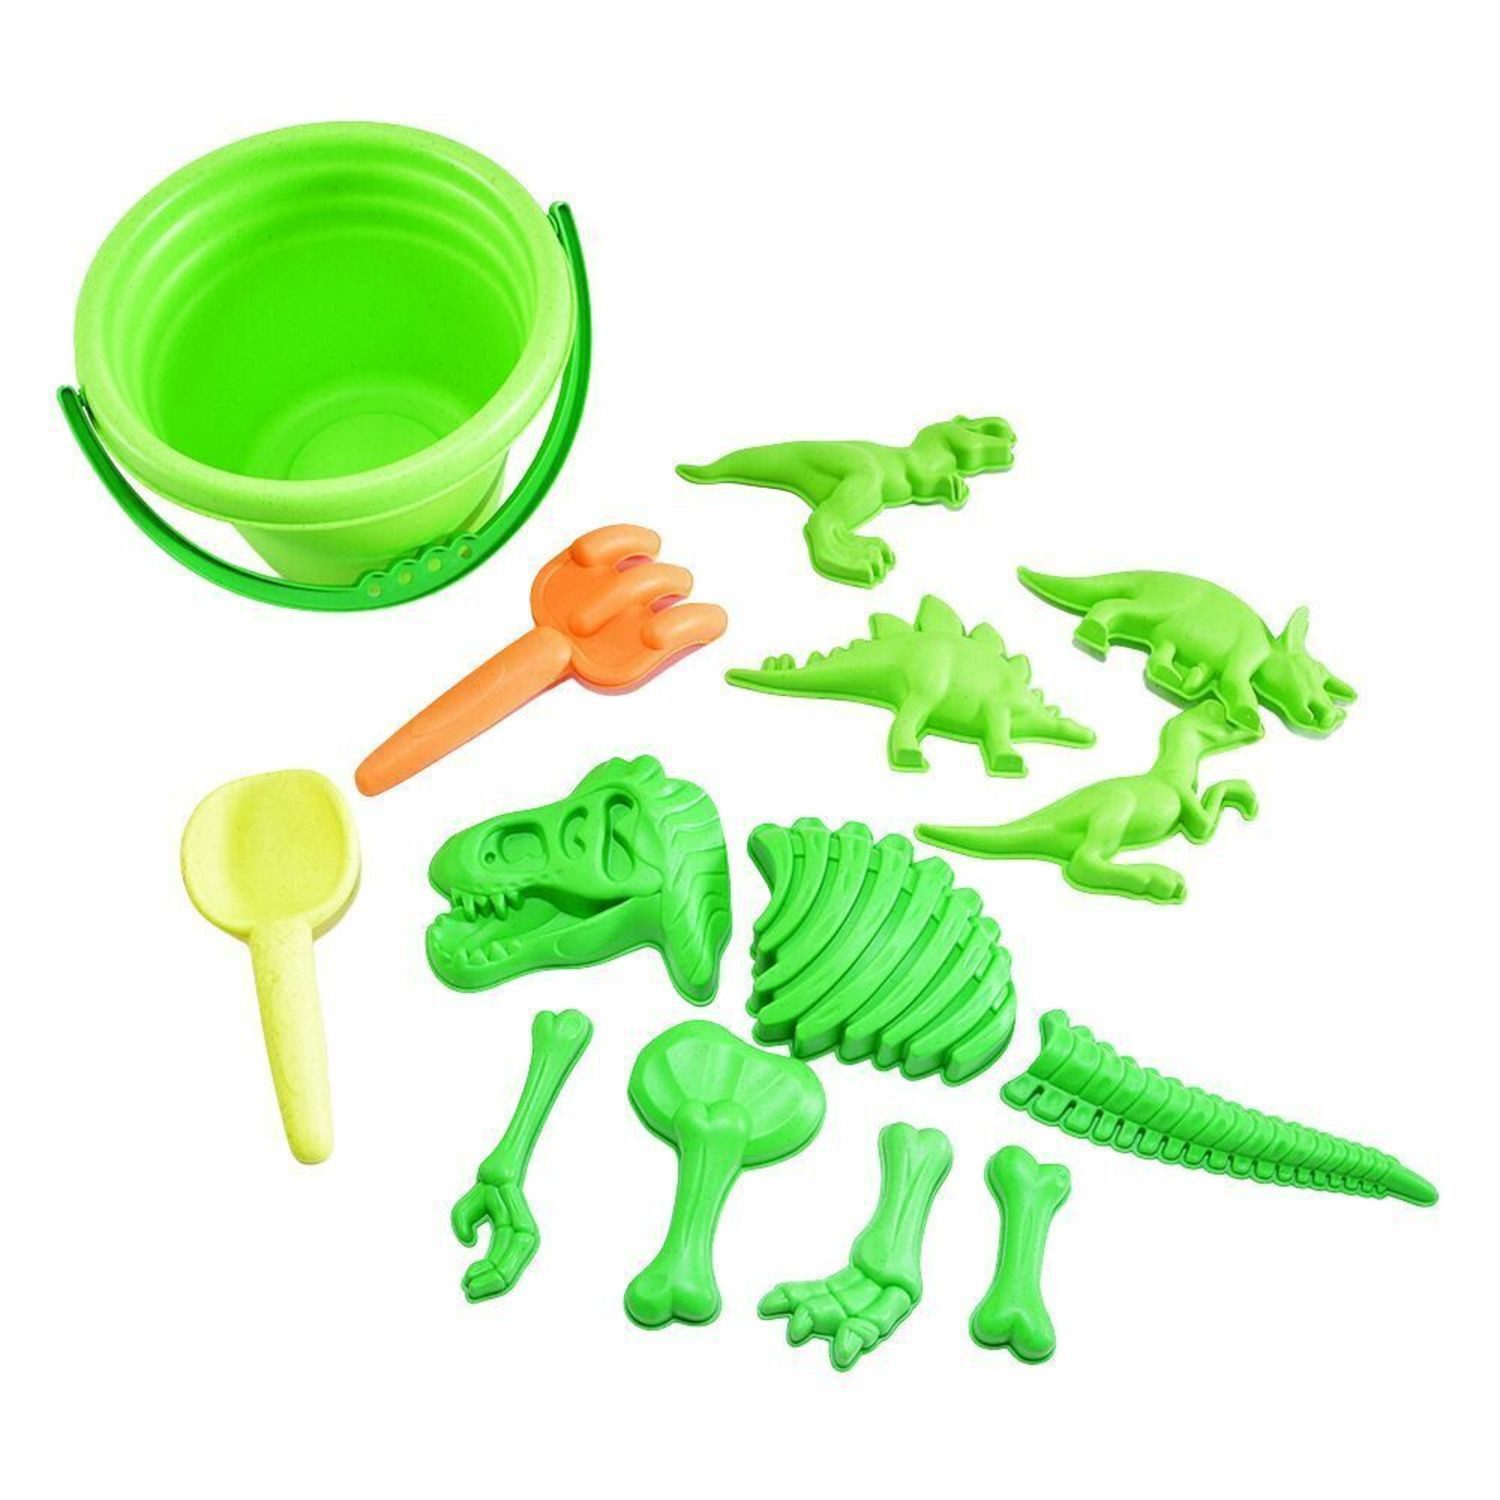 Kögler Sandform Dinosaurier Sandspielzeug mit Eimer, Werkzeug und 11 Formen